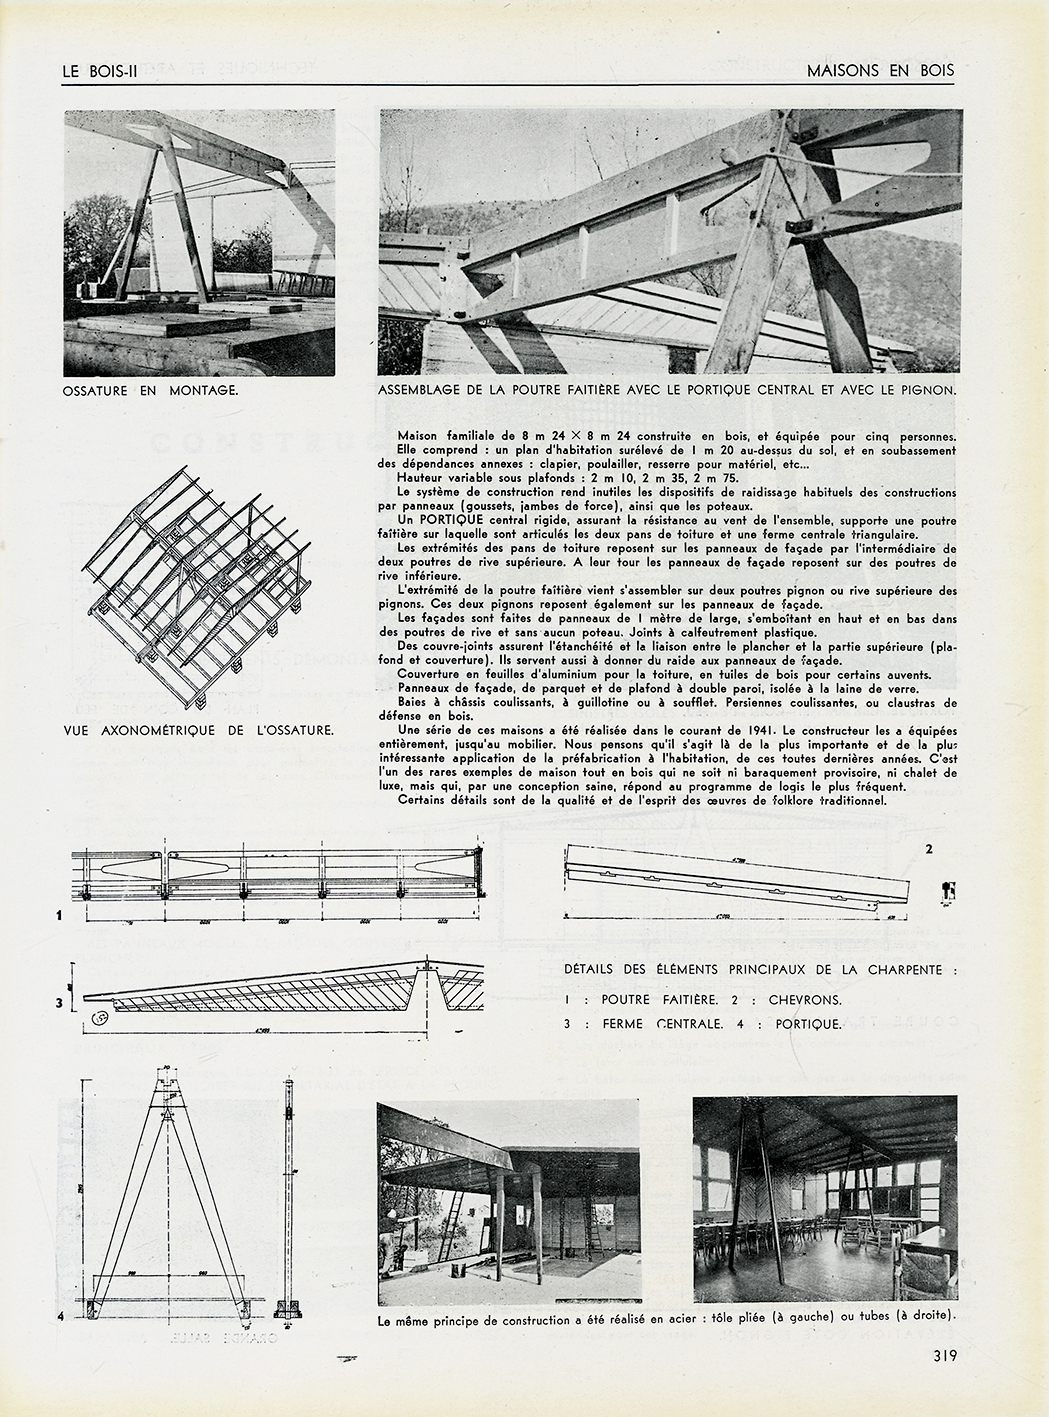 « Maison en bois, maison B.C.C., système des Ateliers Jean Prouvé. Pierre Jeanneret, architecte », <i>Techniques et Architecture</i>, n° 9-10, septembre-octobre 1942.